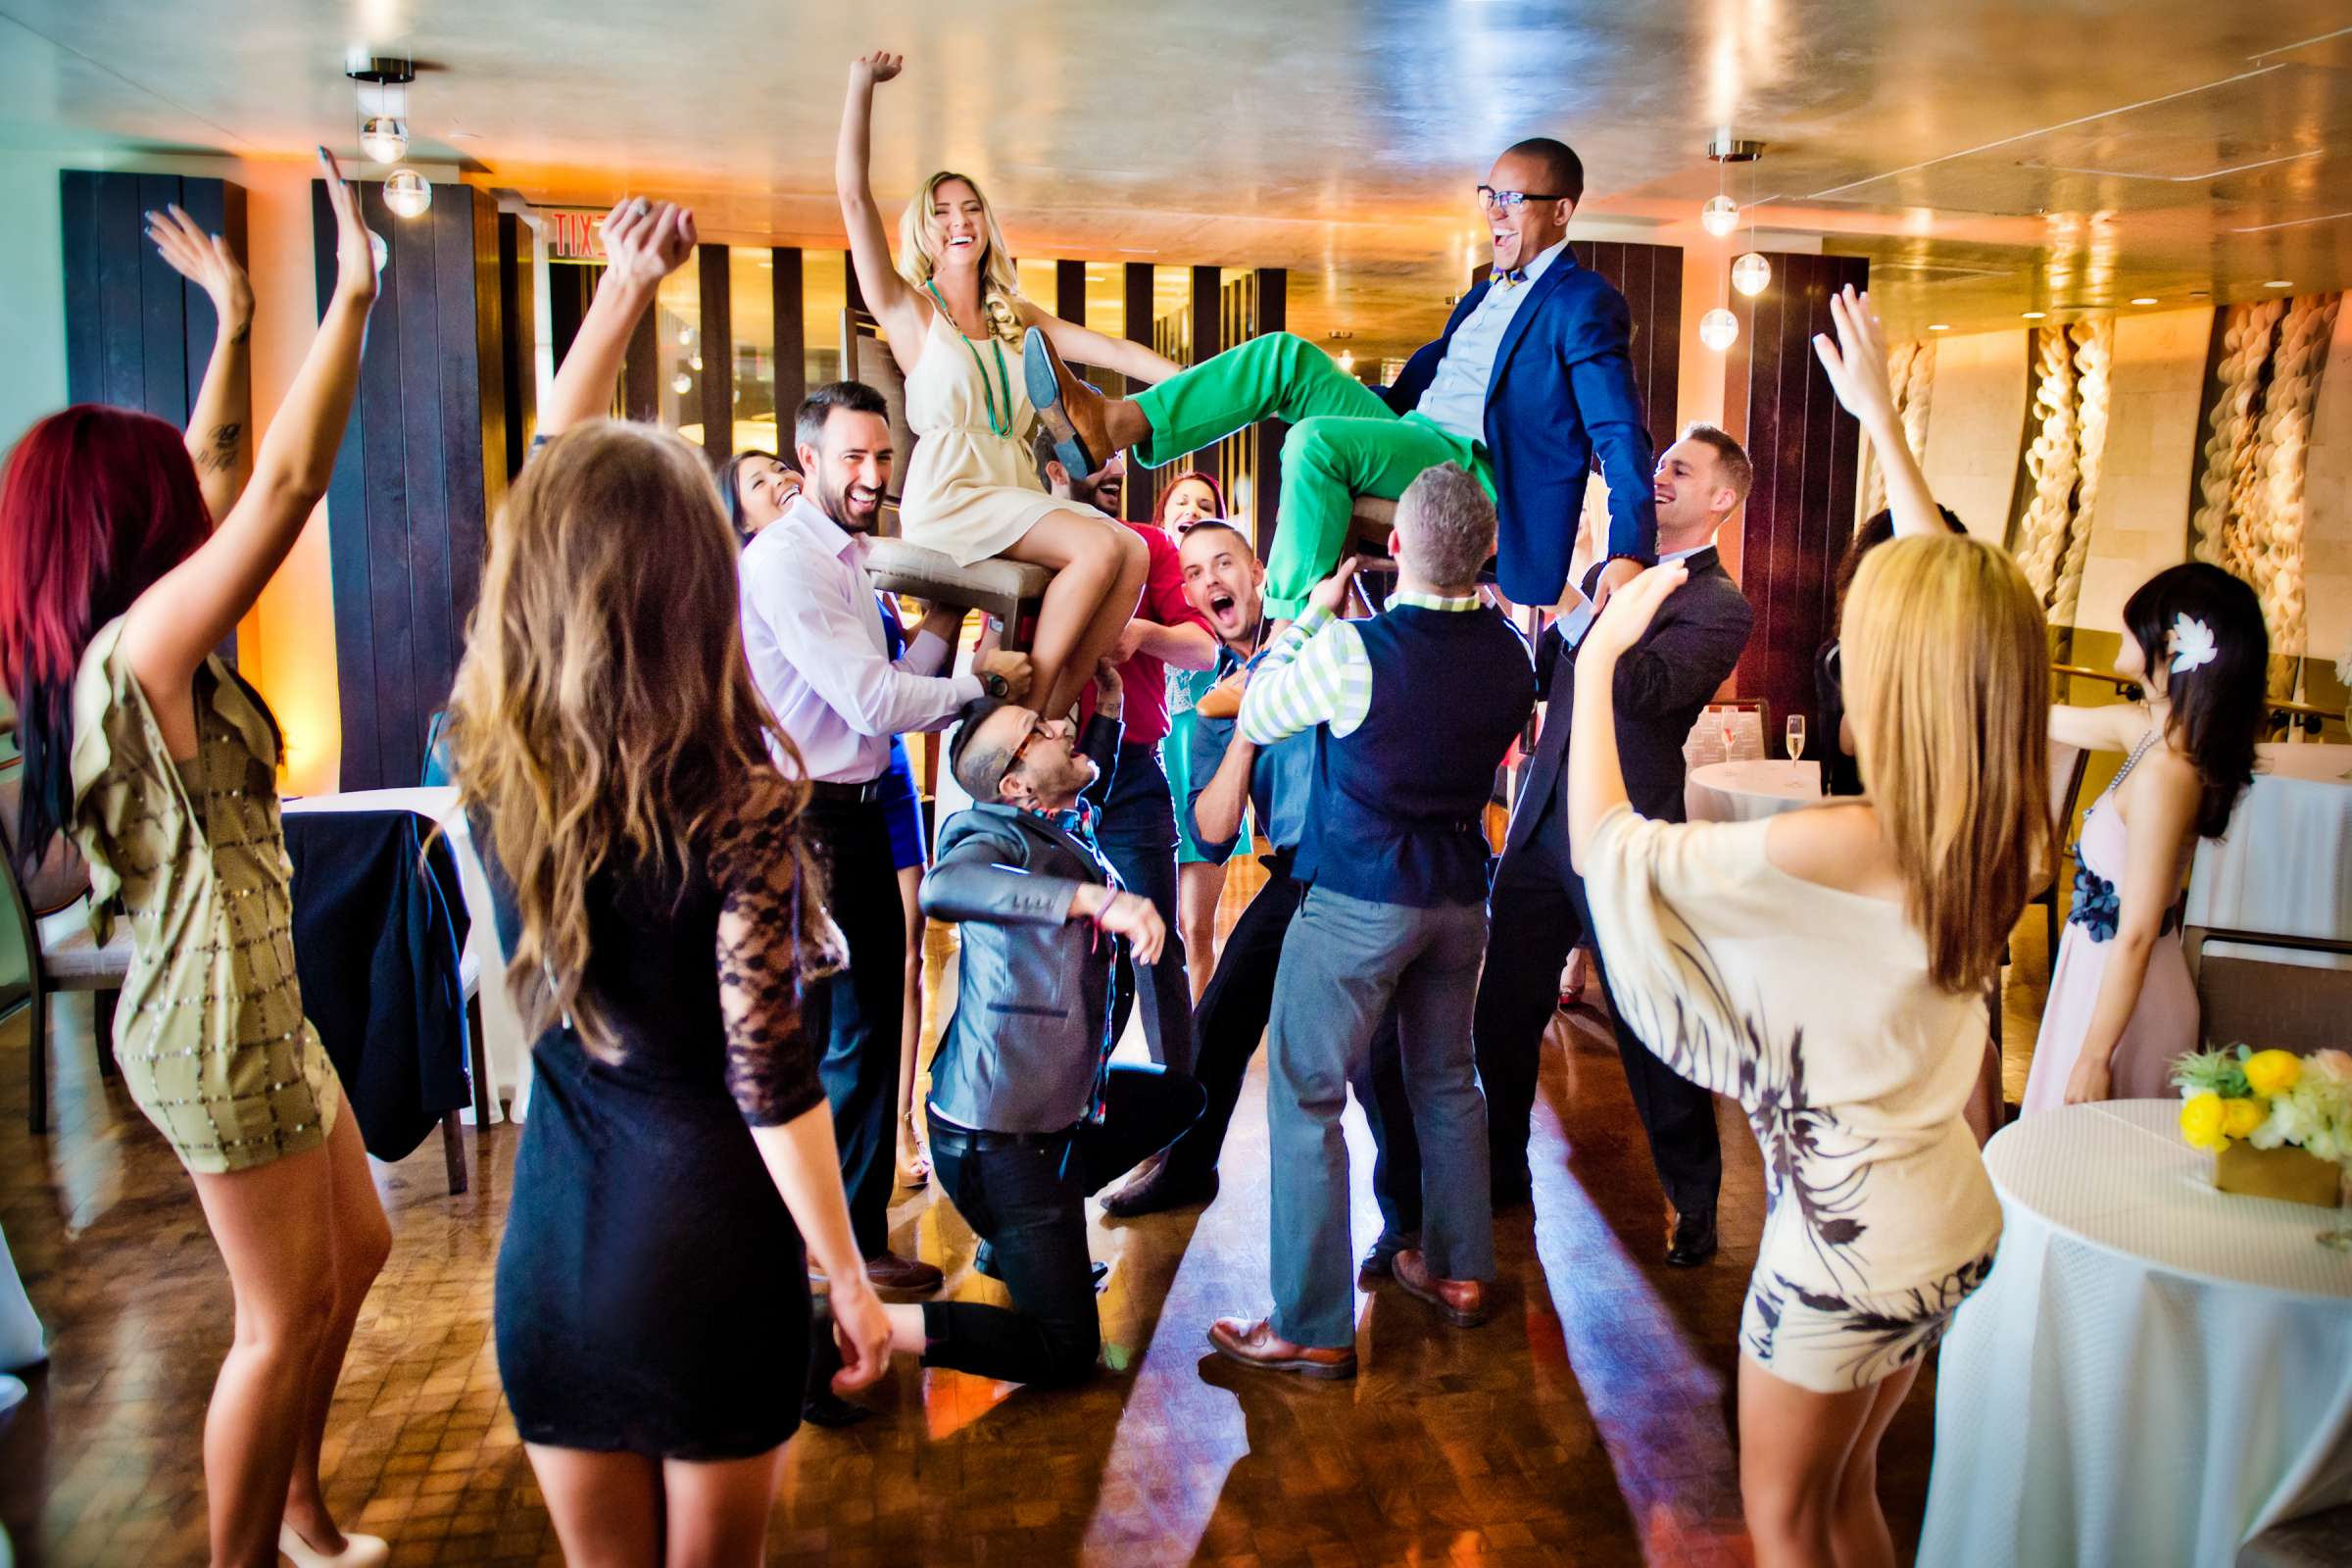 Hotel Palomar San Diego Wedding, High Energy Fun Wedding Photo #118210 by True Photography